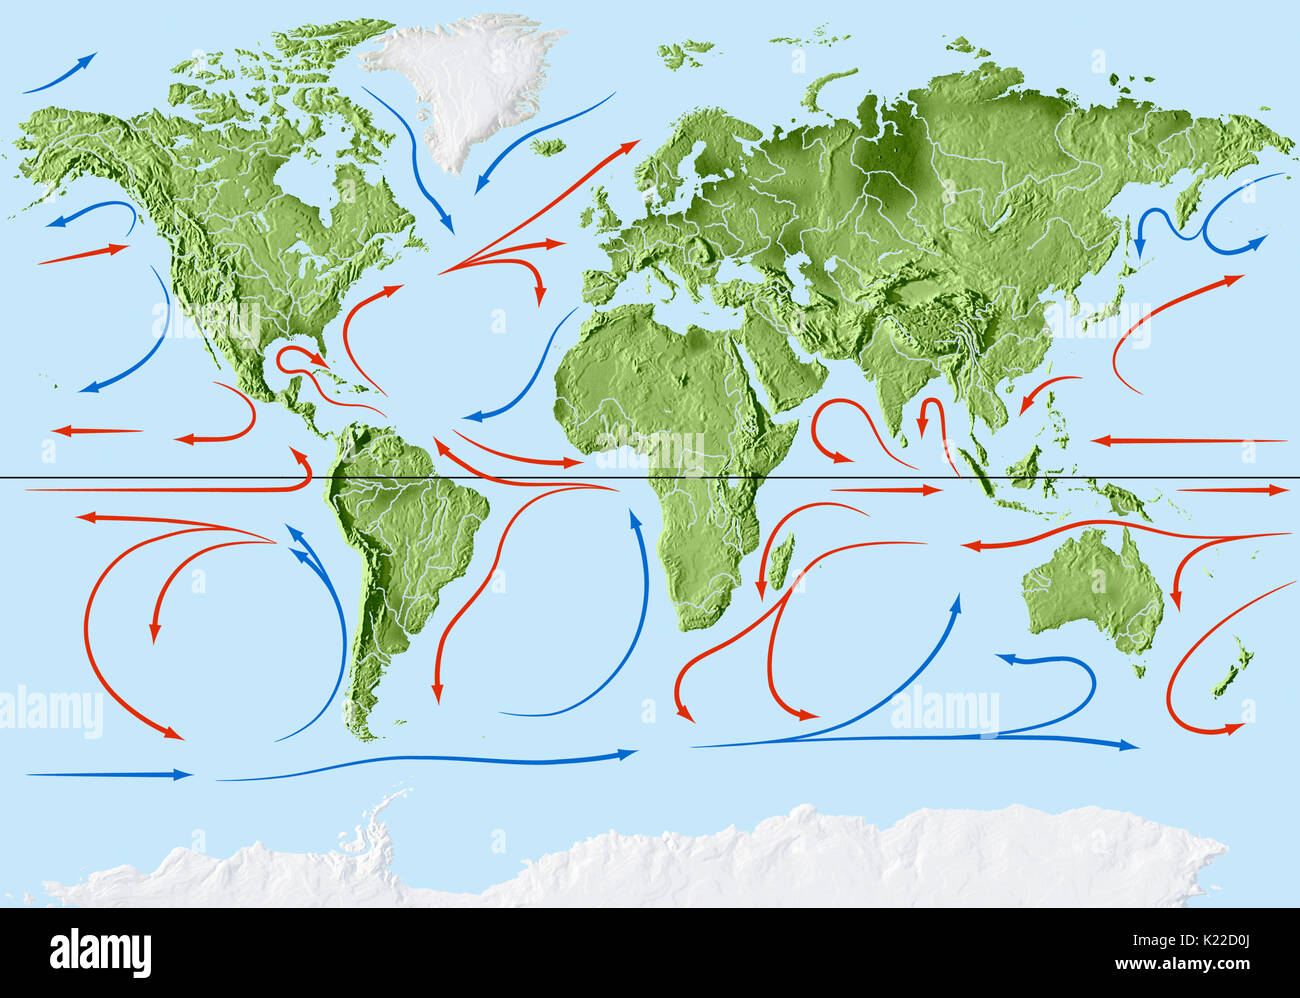 Les courants qui déplacent, poussé par les vents dominants, à travers les couches supérieures des océans, peut être chaud ou froid. Banque D'Images